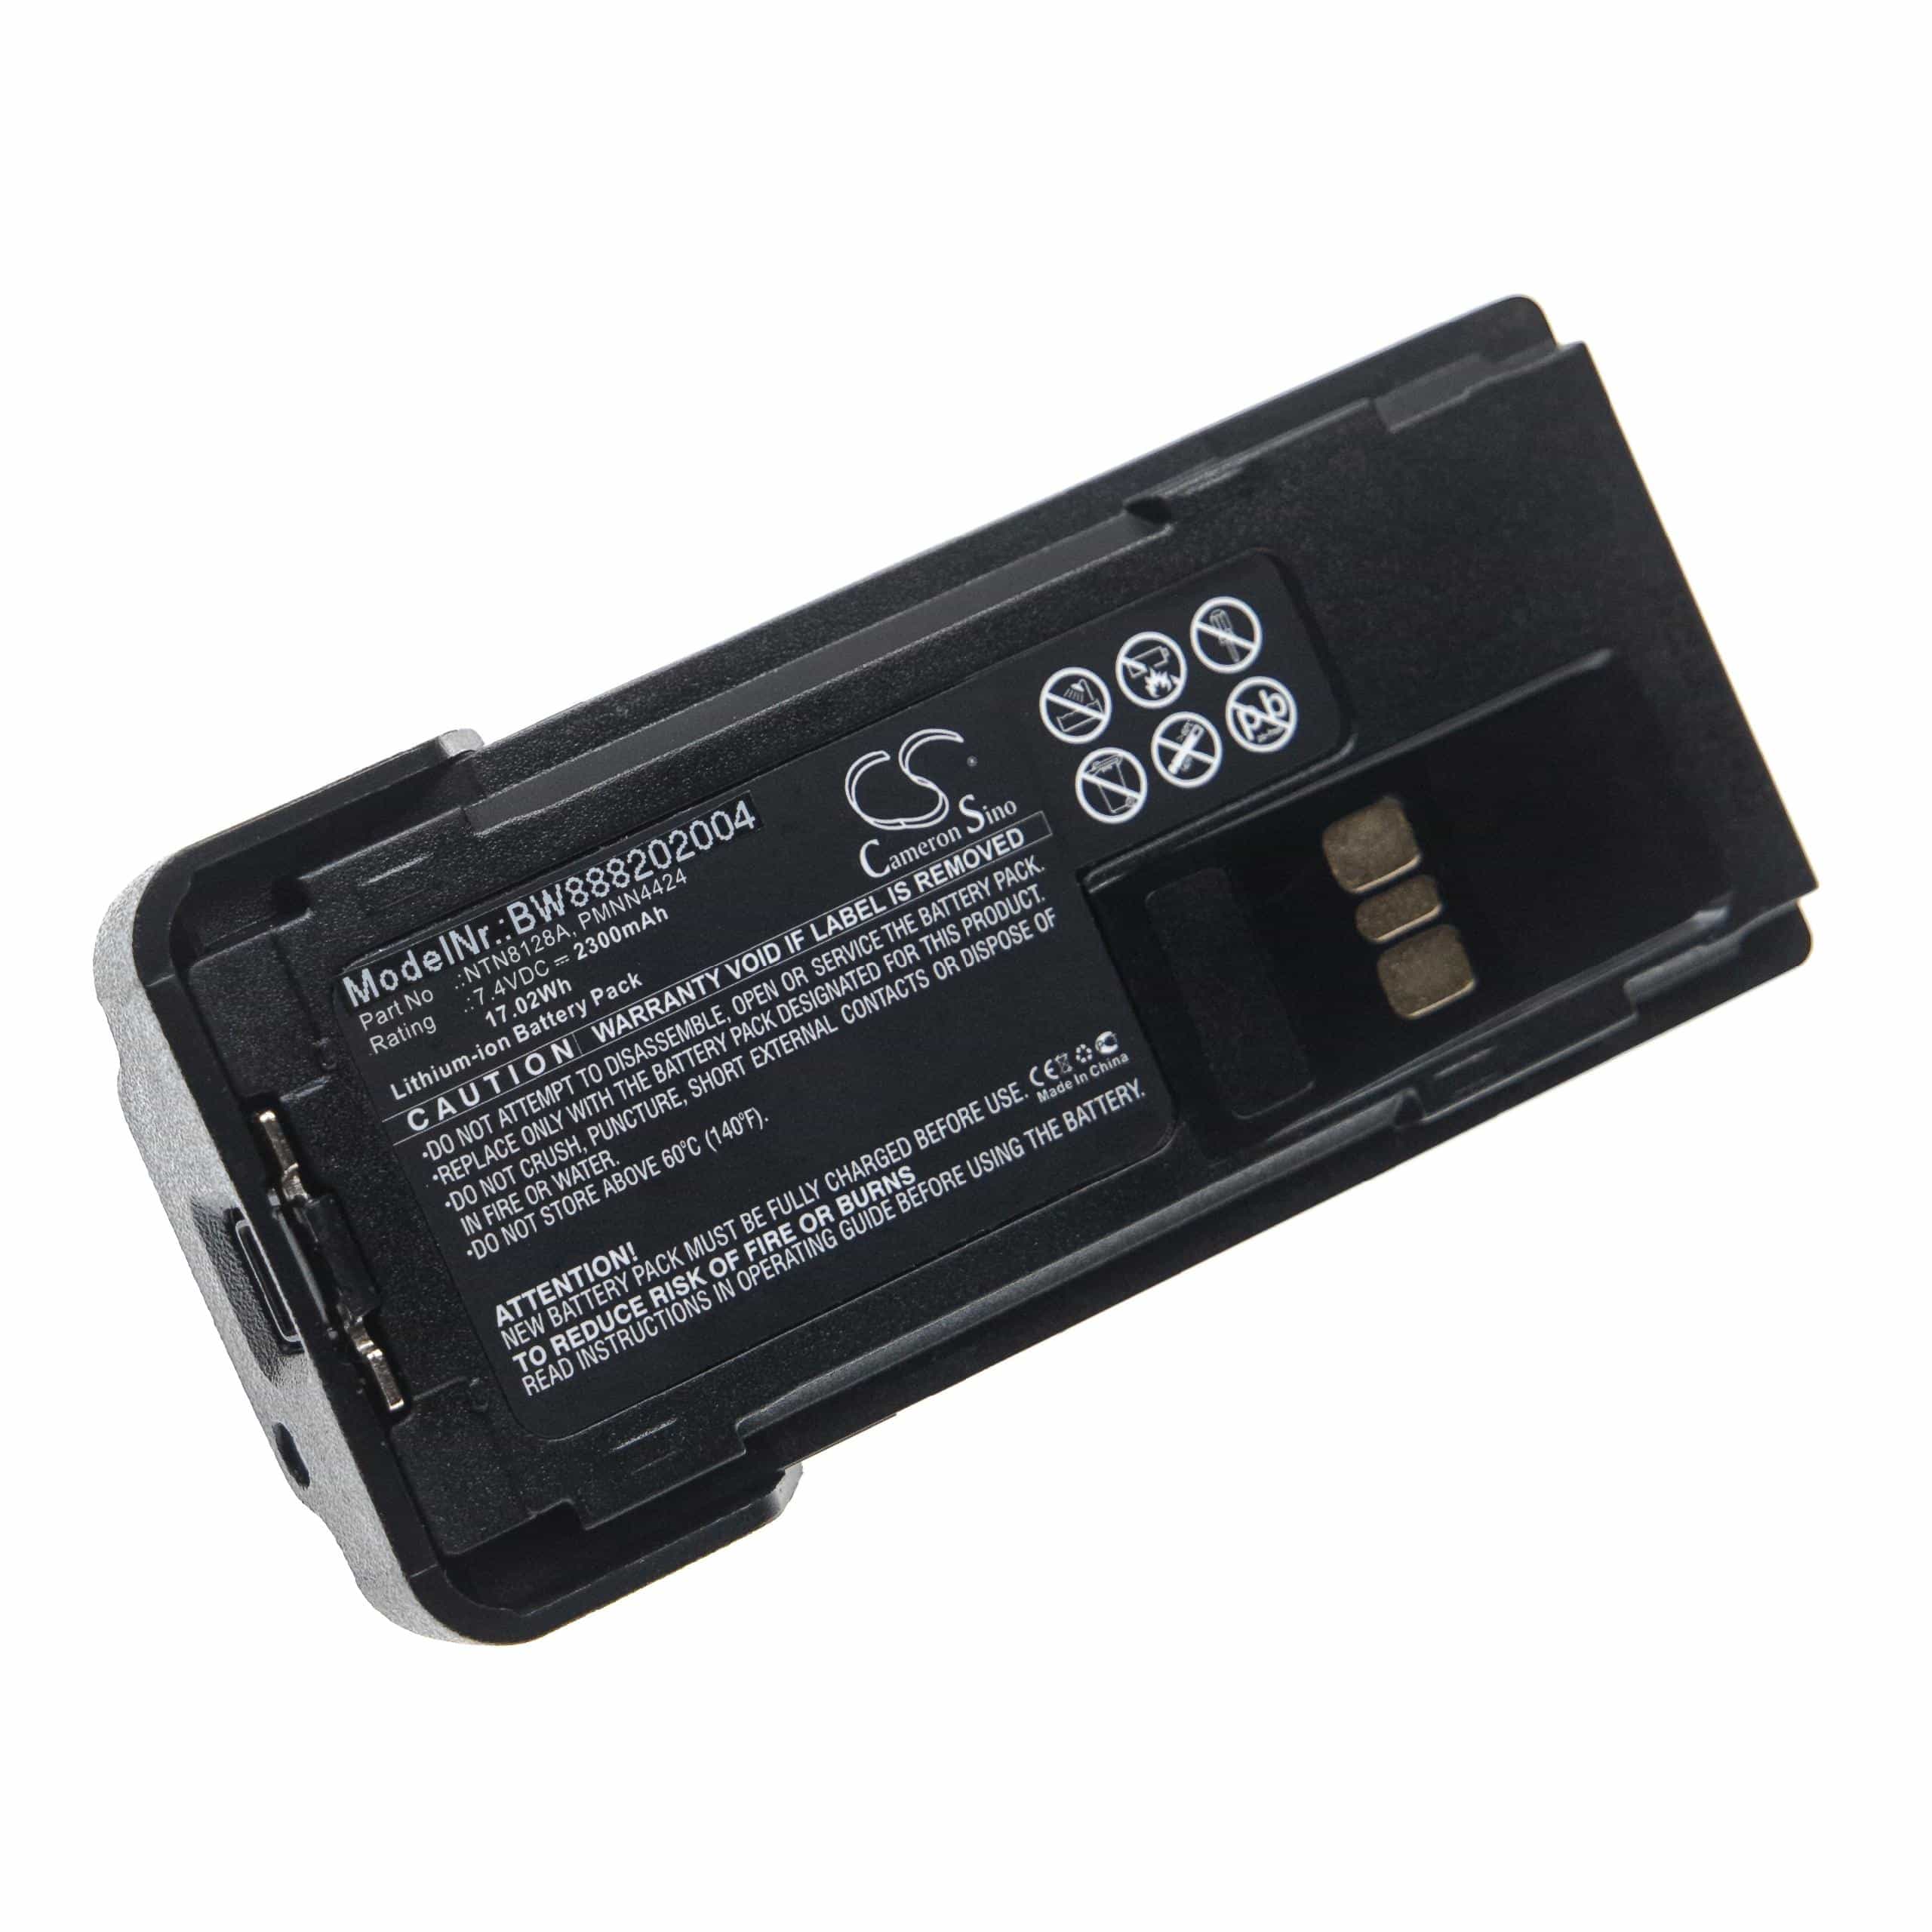 Radio Battery Replacement for Motorola NTN8128A, NNTN8129AR, NNTN8128A, PMNN4406AR - 2300mAh 7.4V Li-Ion